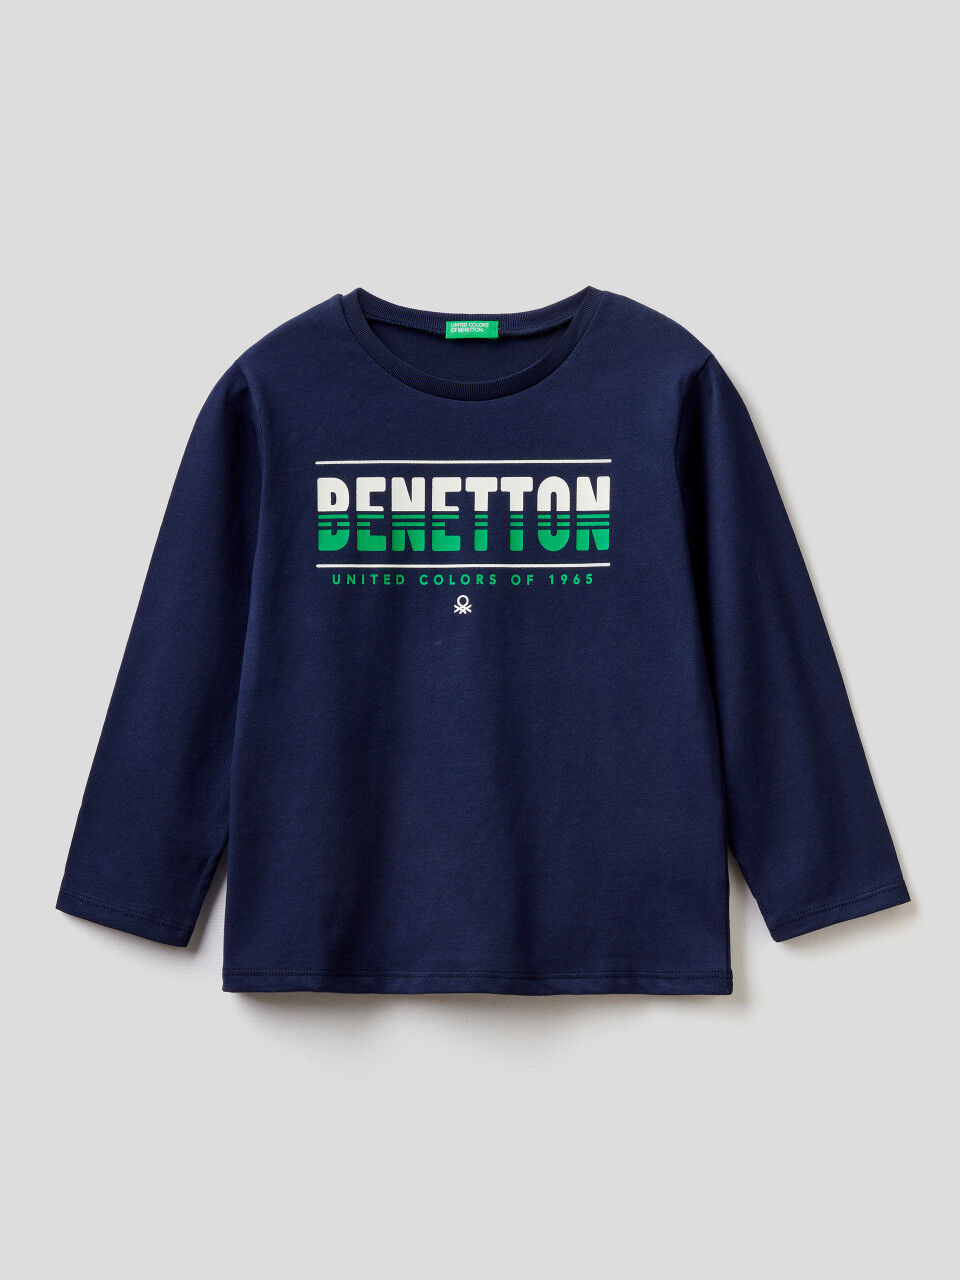 Camisetas Manga Larga Bebé niño Colección Benetton